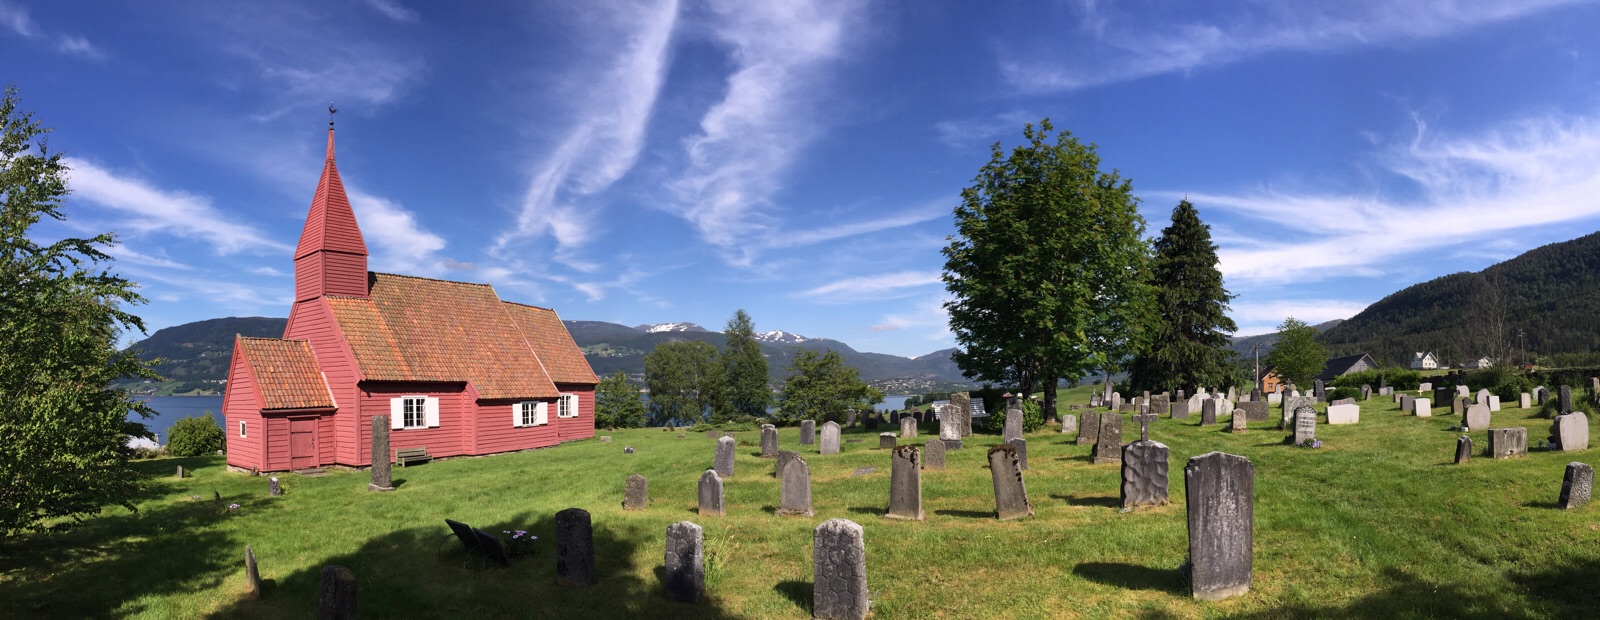 La vieille église de Gimmestad